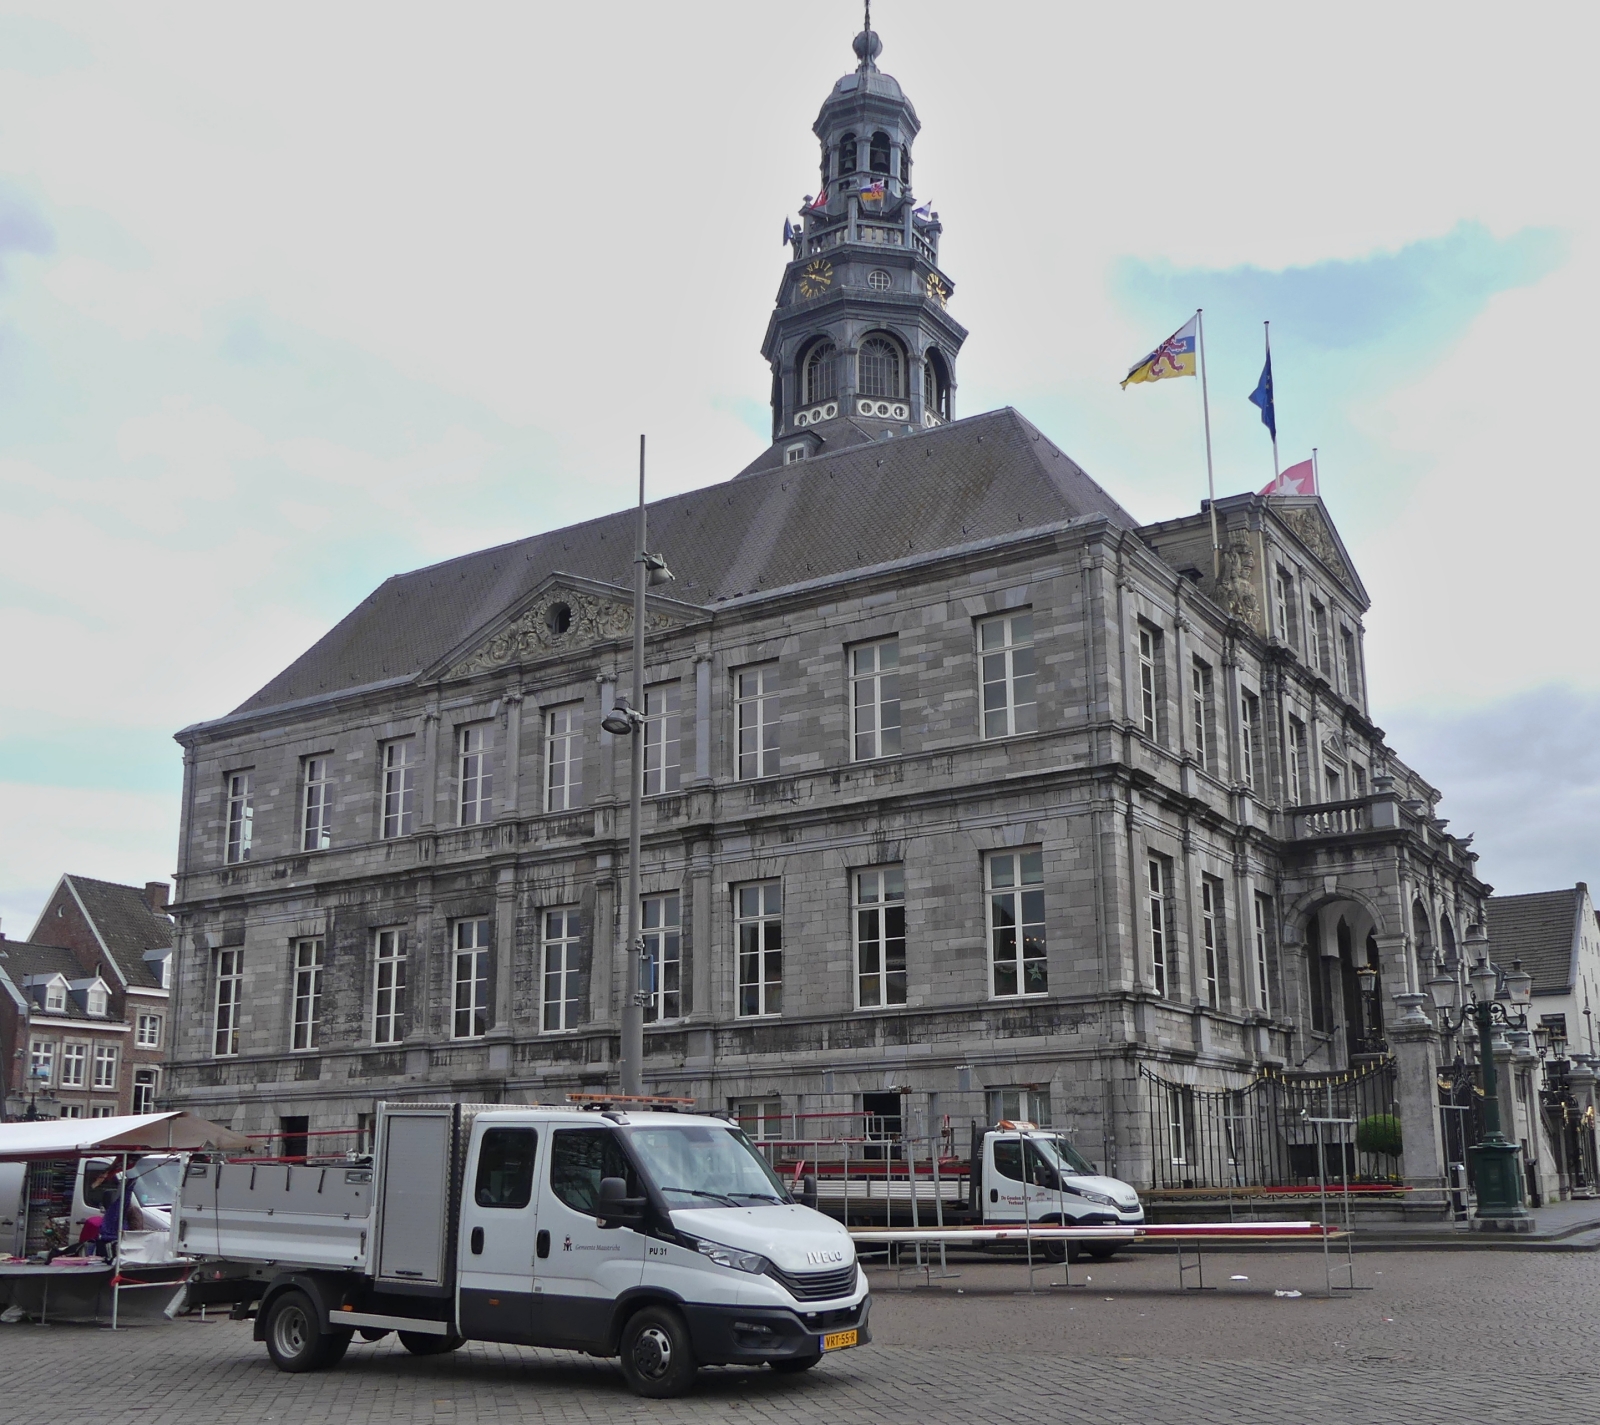 Die Marktstnde sind fast alle abgebaut und geben nun den Blick frei auf das Gemeindehaus von Maastricht. 04.2024

